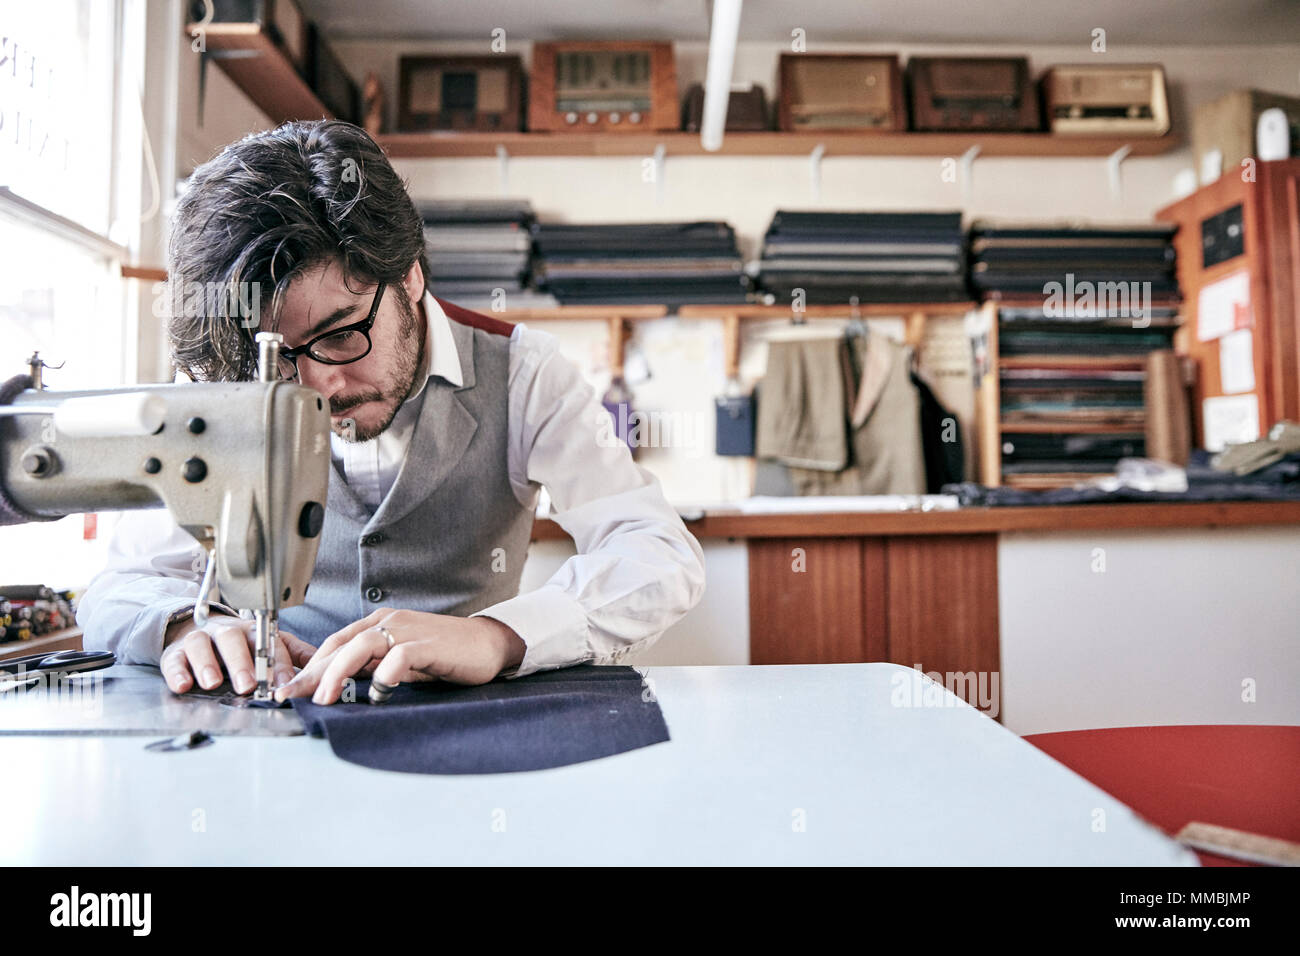 Hombre coser una prenda utilizando una máquina de coser industriales, en un taller de sastrería familiar. Foto de stock